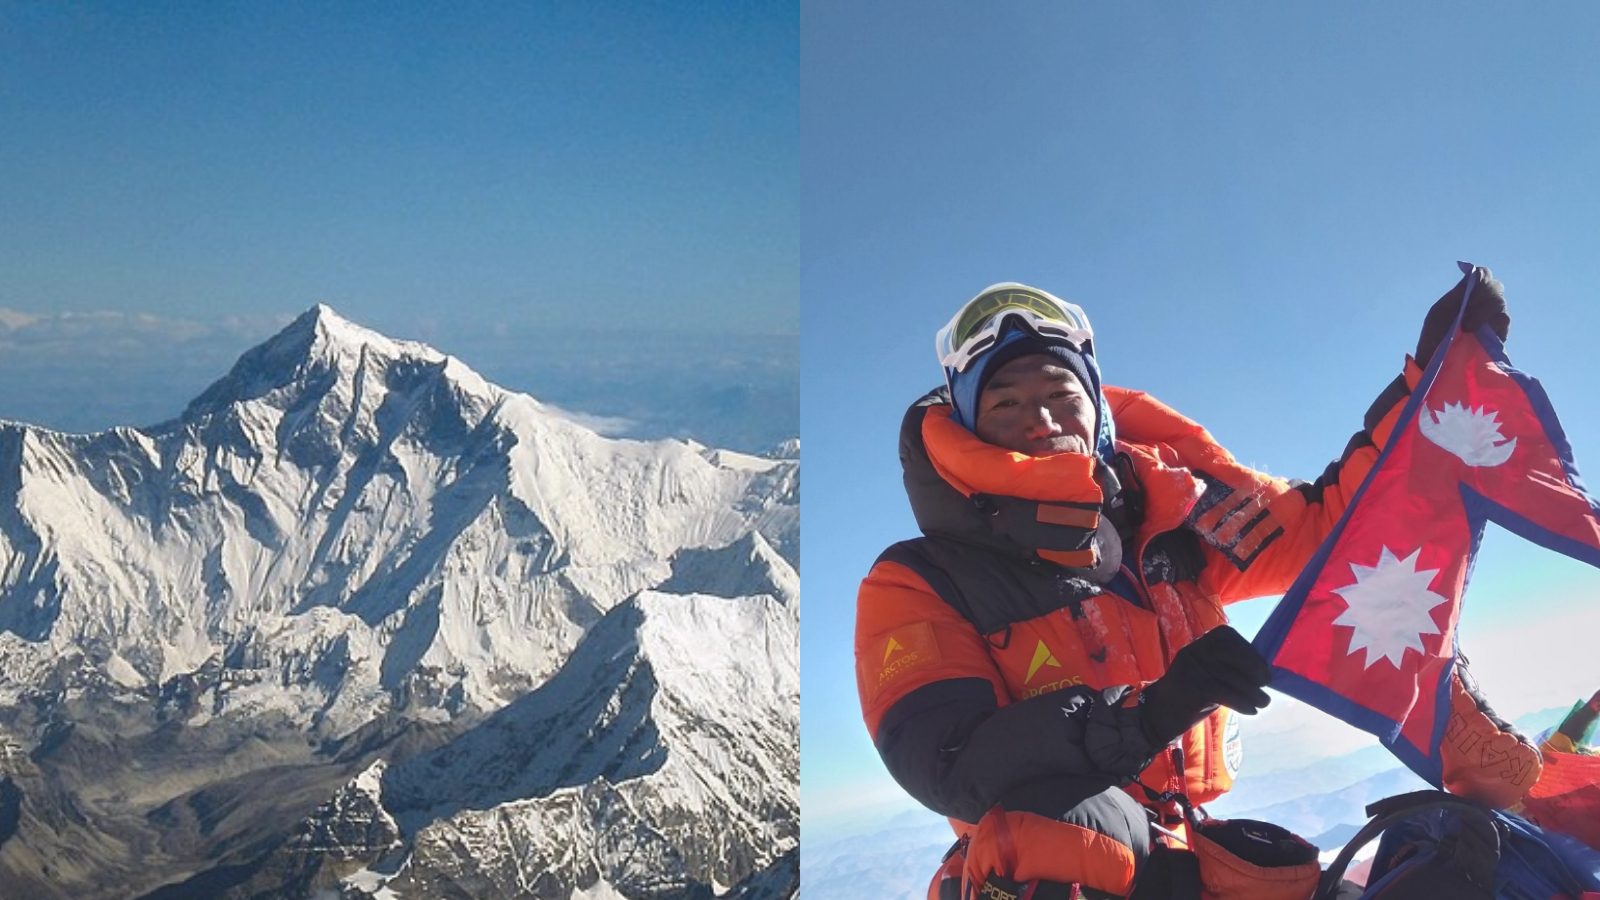 Mount Everest Kami Rita ఎవరెస్టు ఎక్కడంలో ఇతనే బెస్టు 26సార్లు శిఖరం తన పాదాక్రాంతం